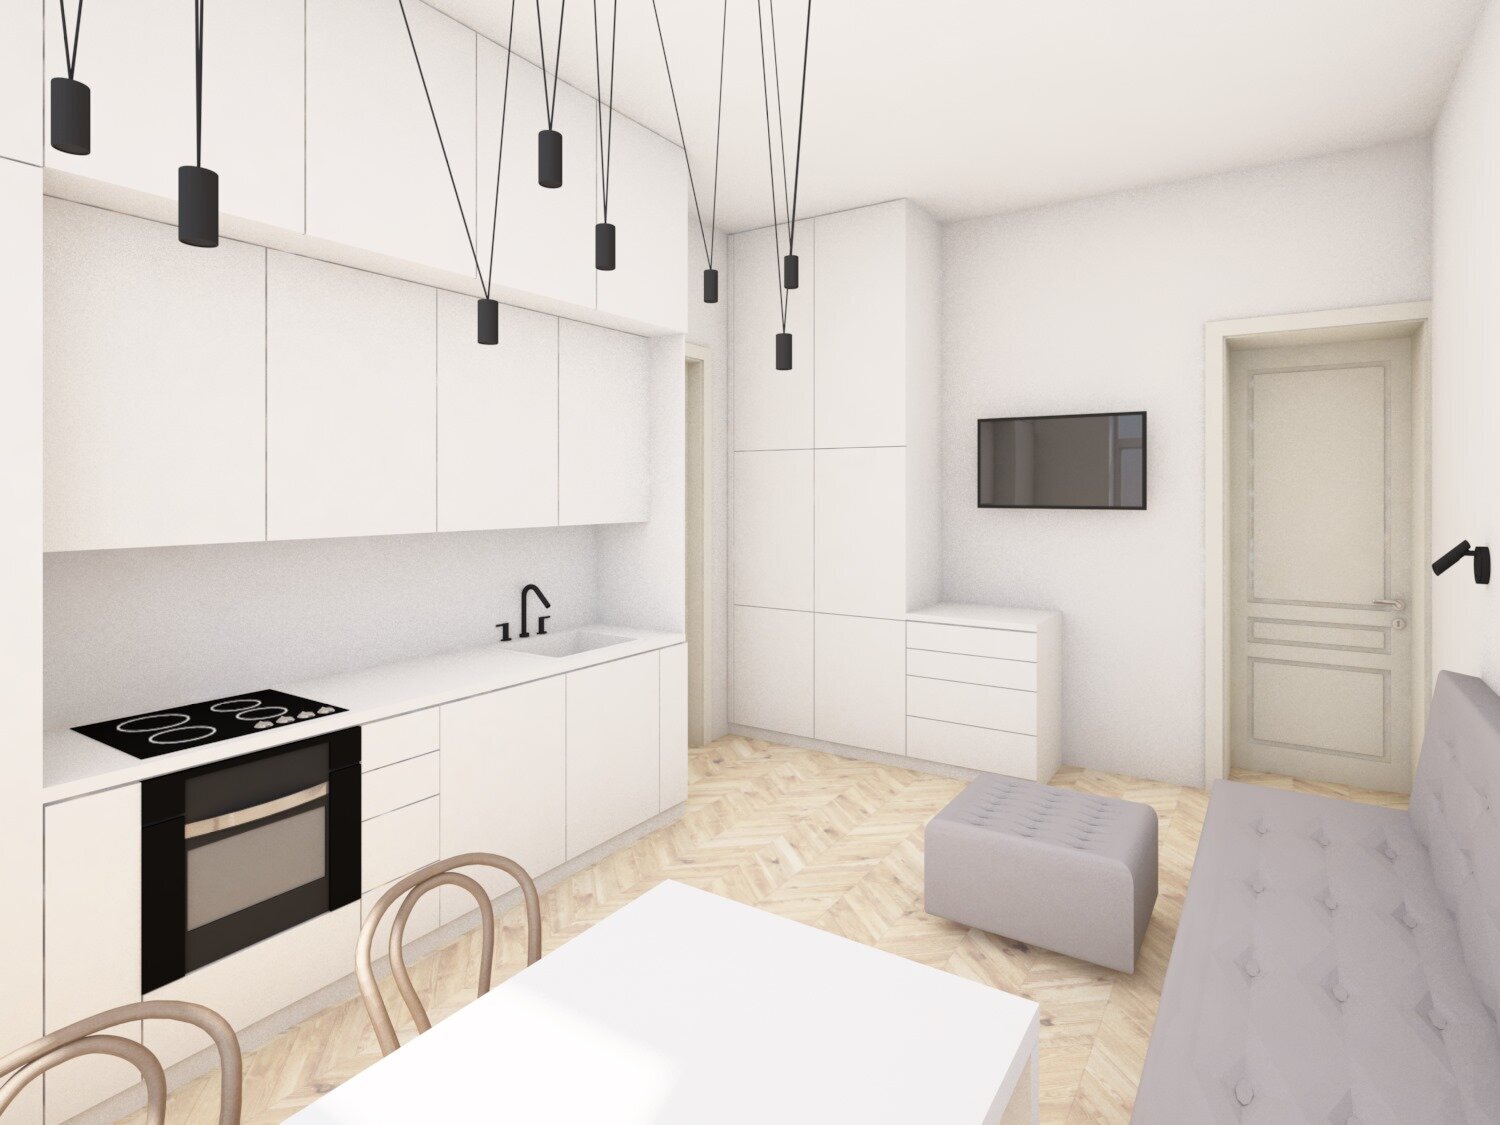 návrh interiéru bytu pohled do kuchyně